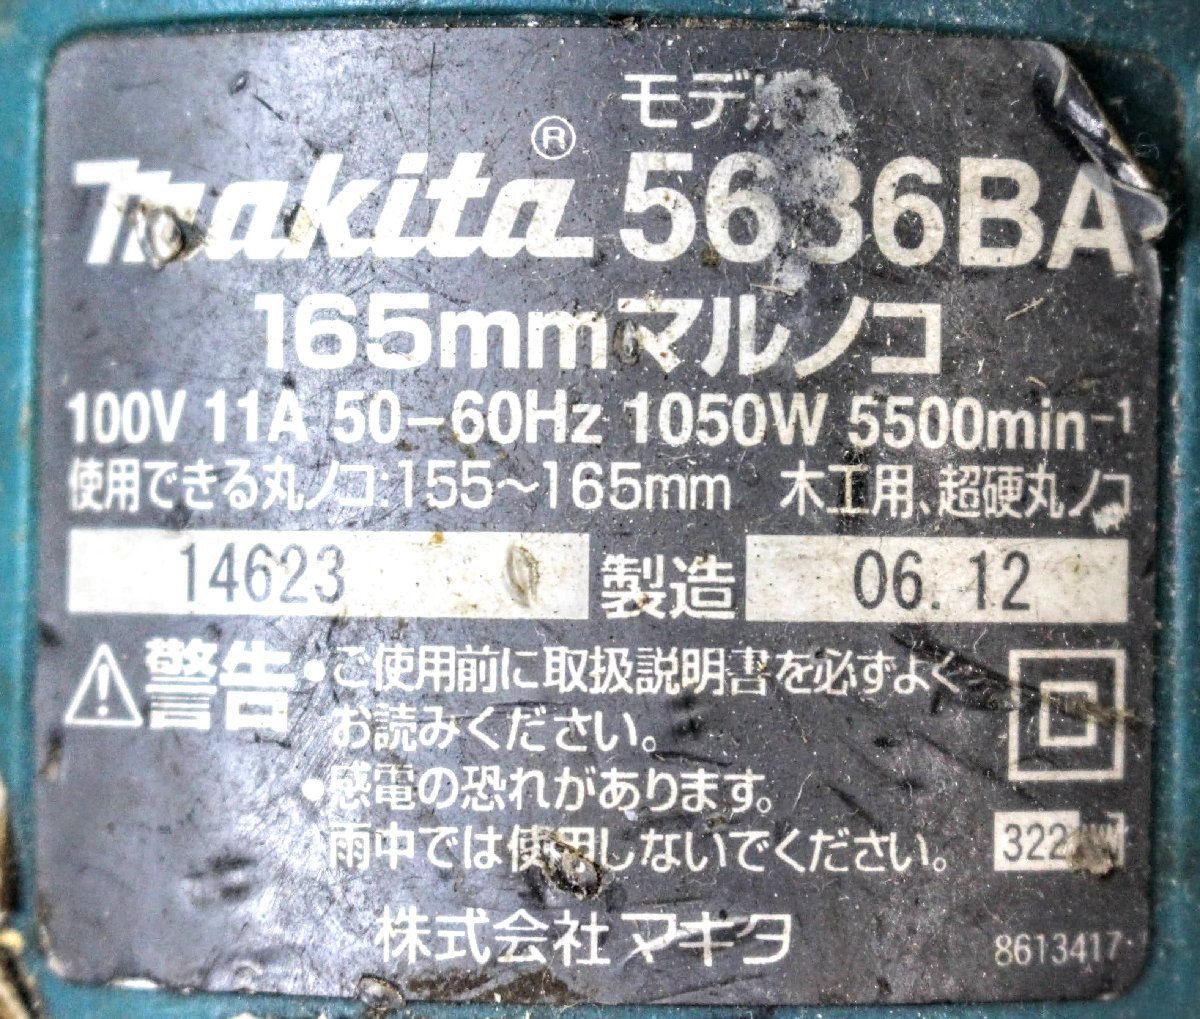 動作品☆makita マキタ 165mmマルノコ 5636BA コード式 100V 11A 丸鋸 切断機 電動工具 A2098_画像7